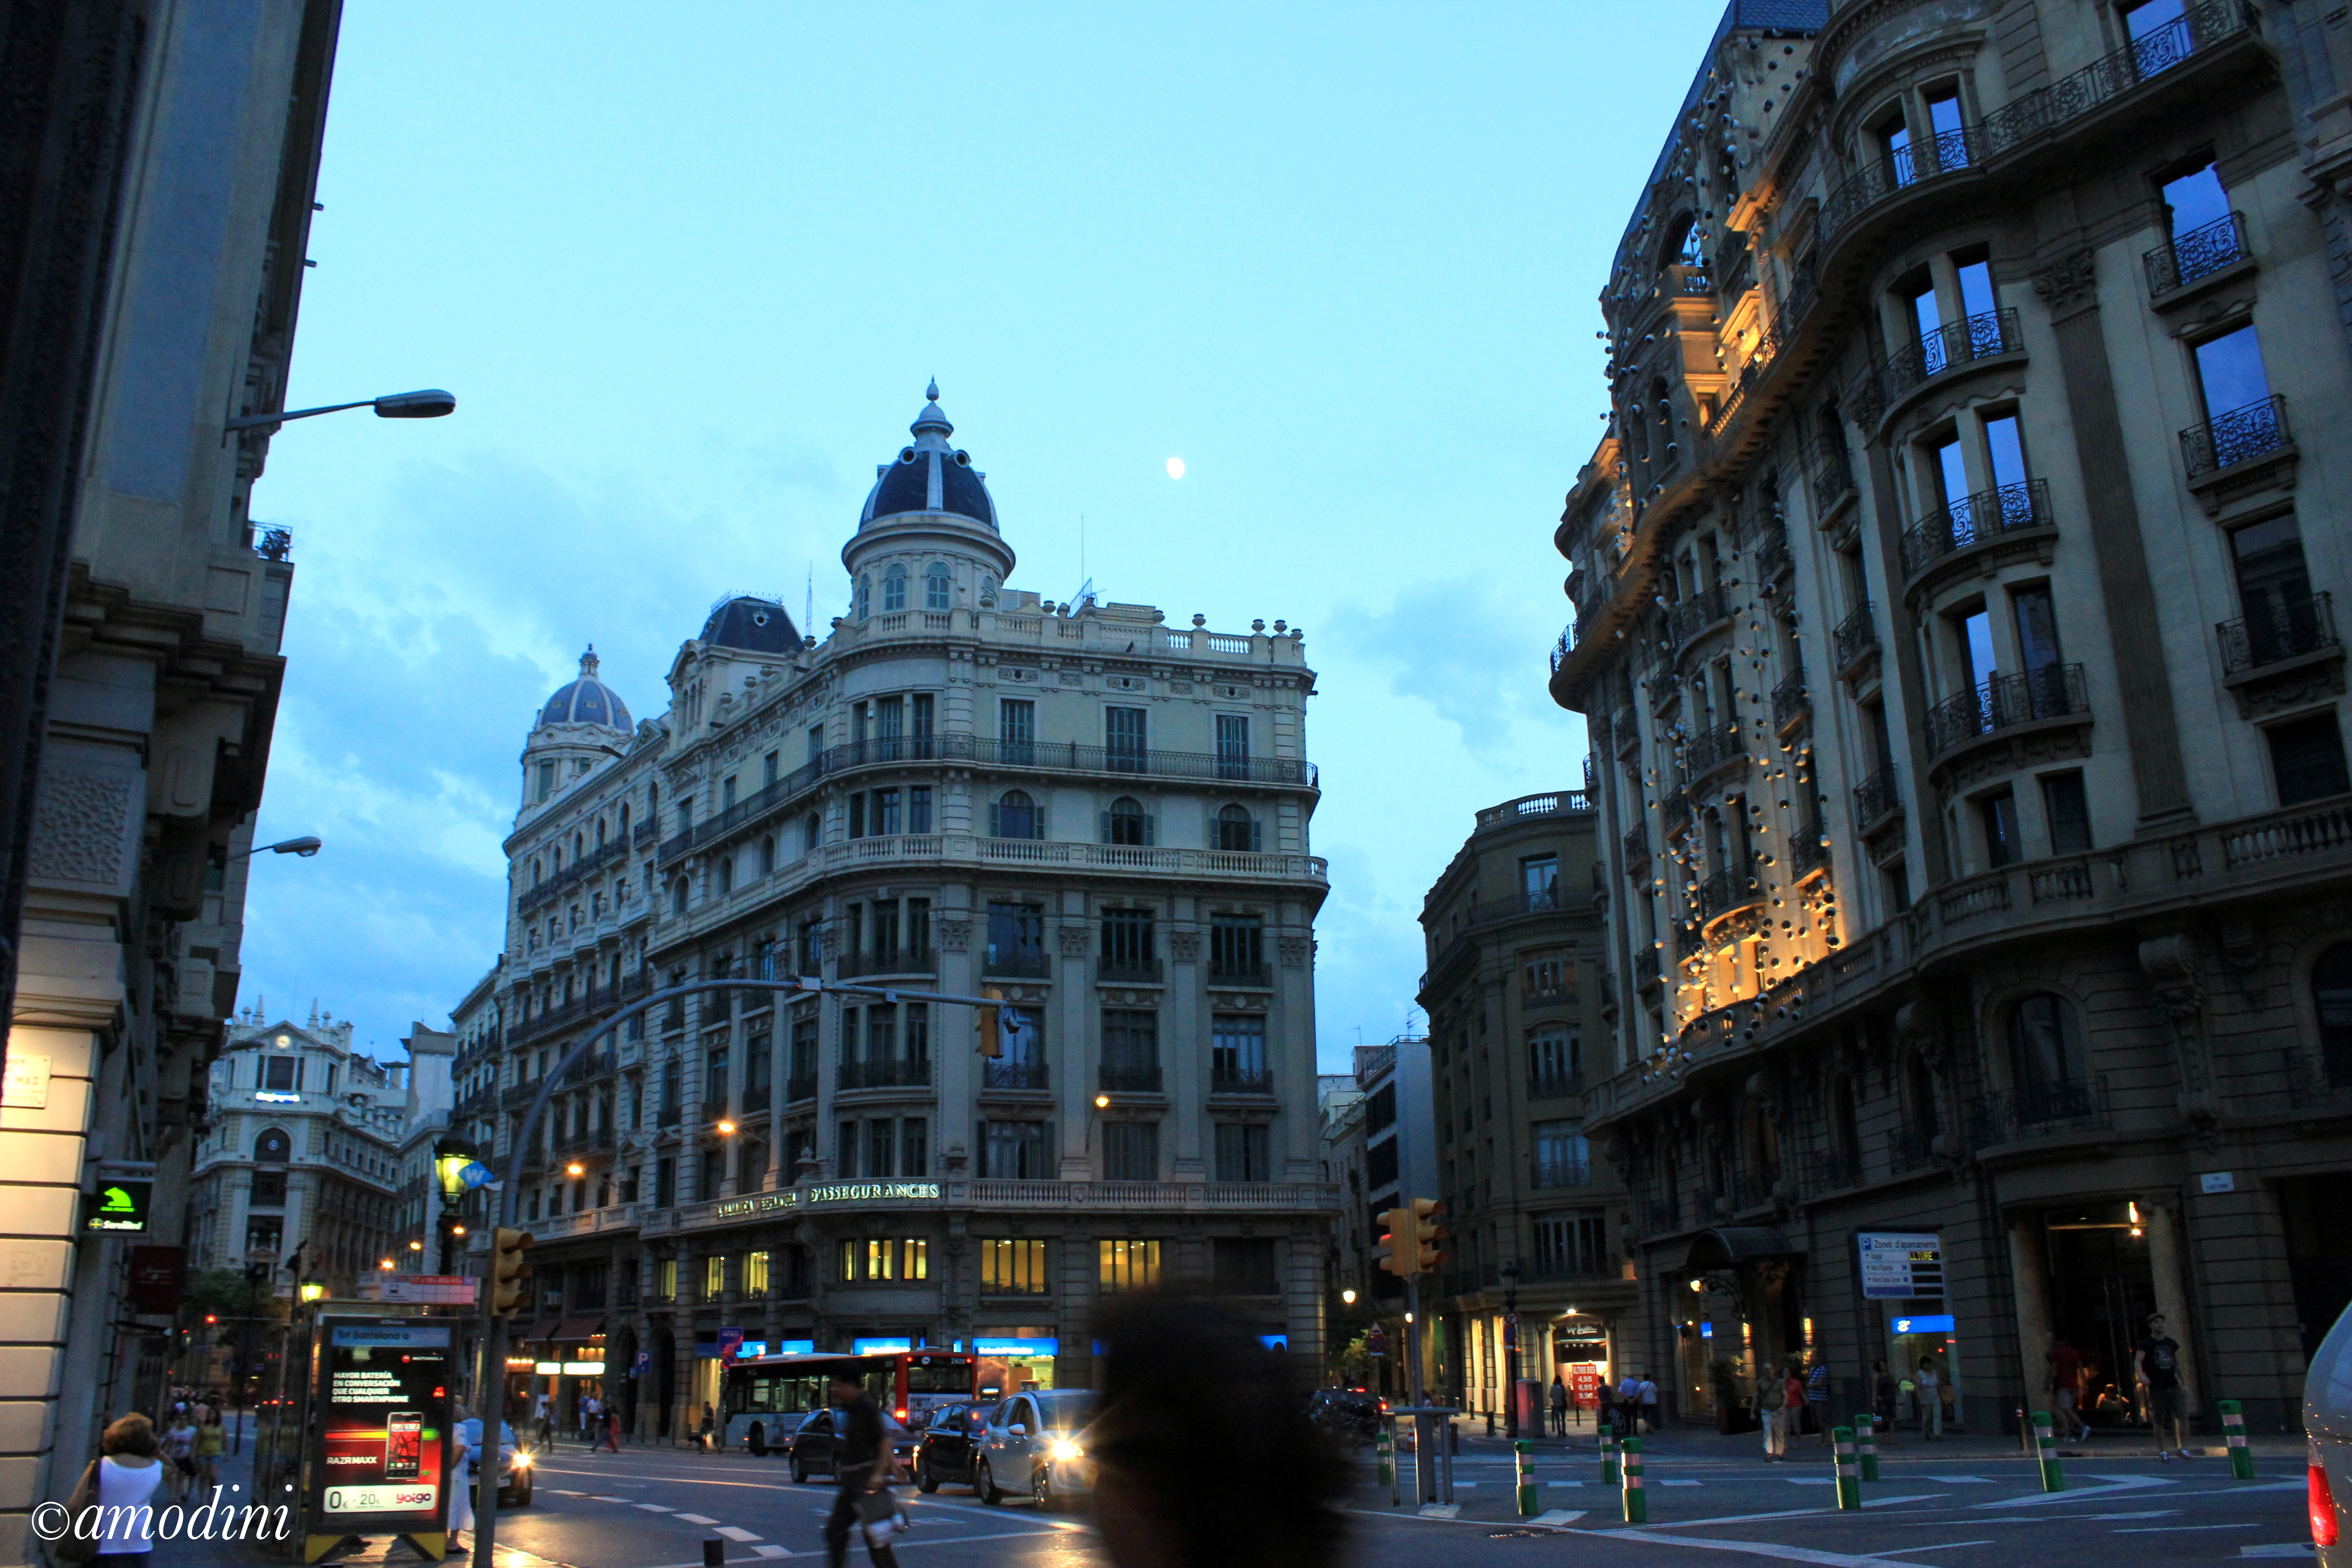 Spain street view